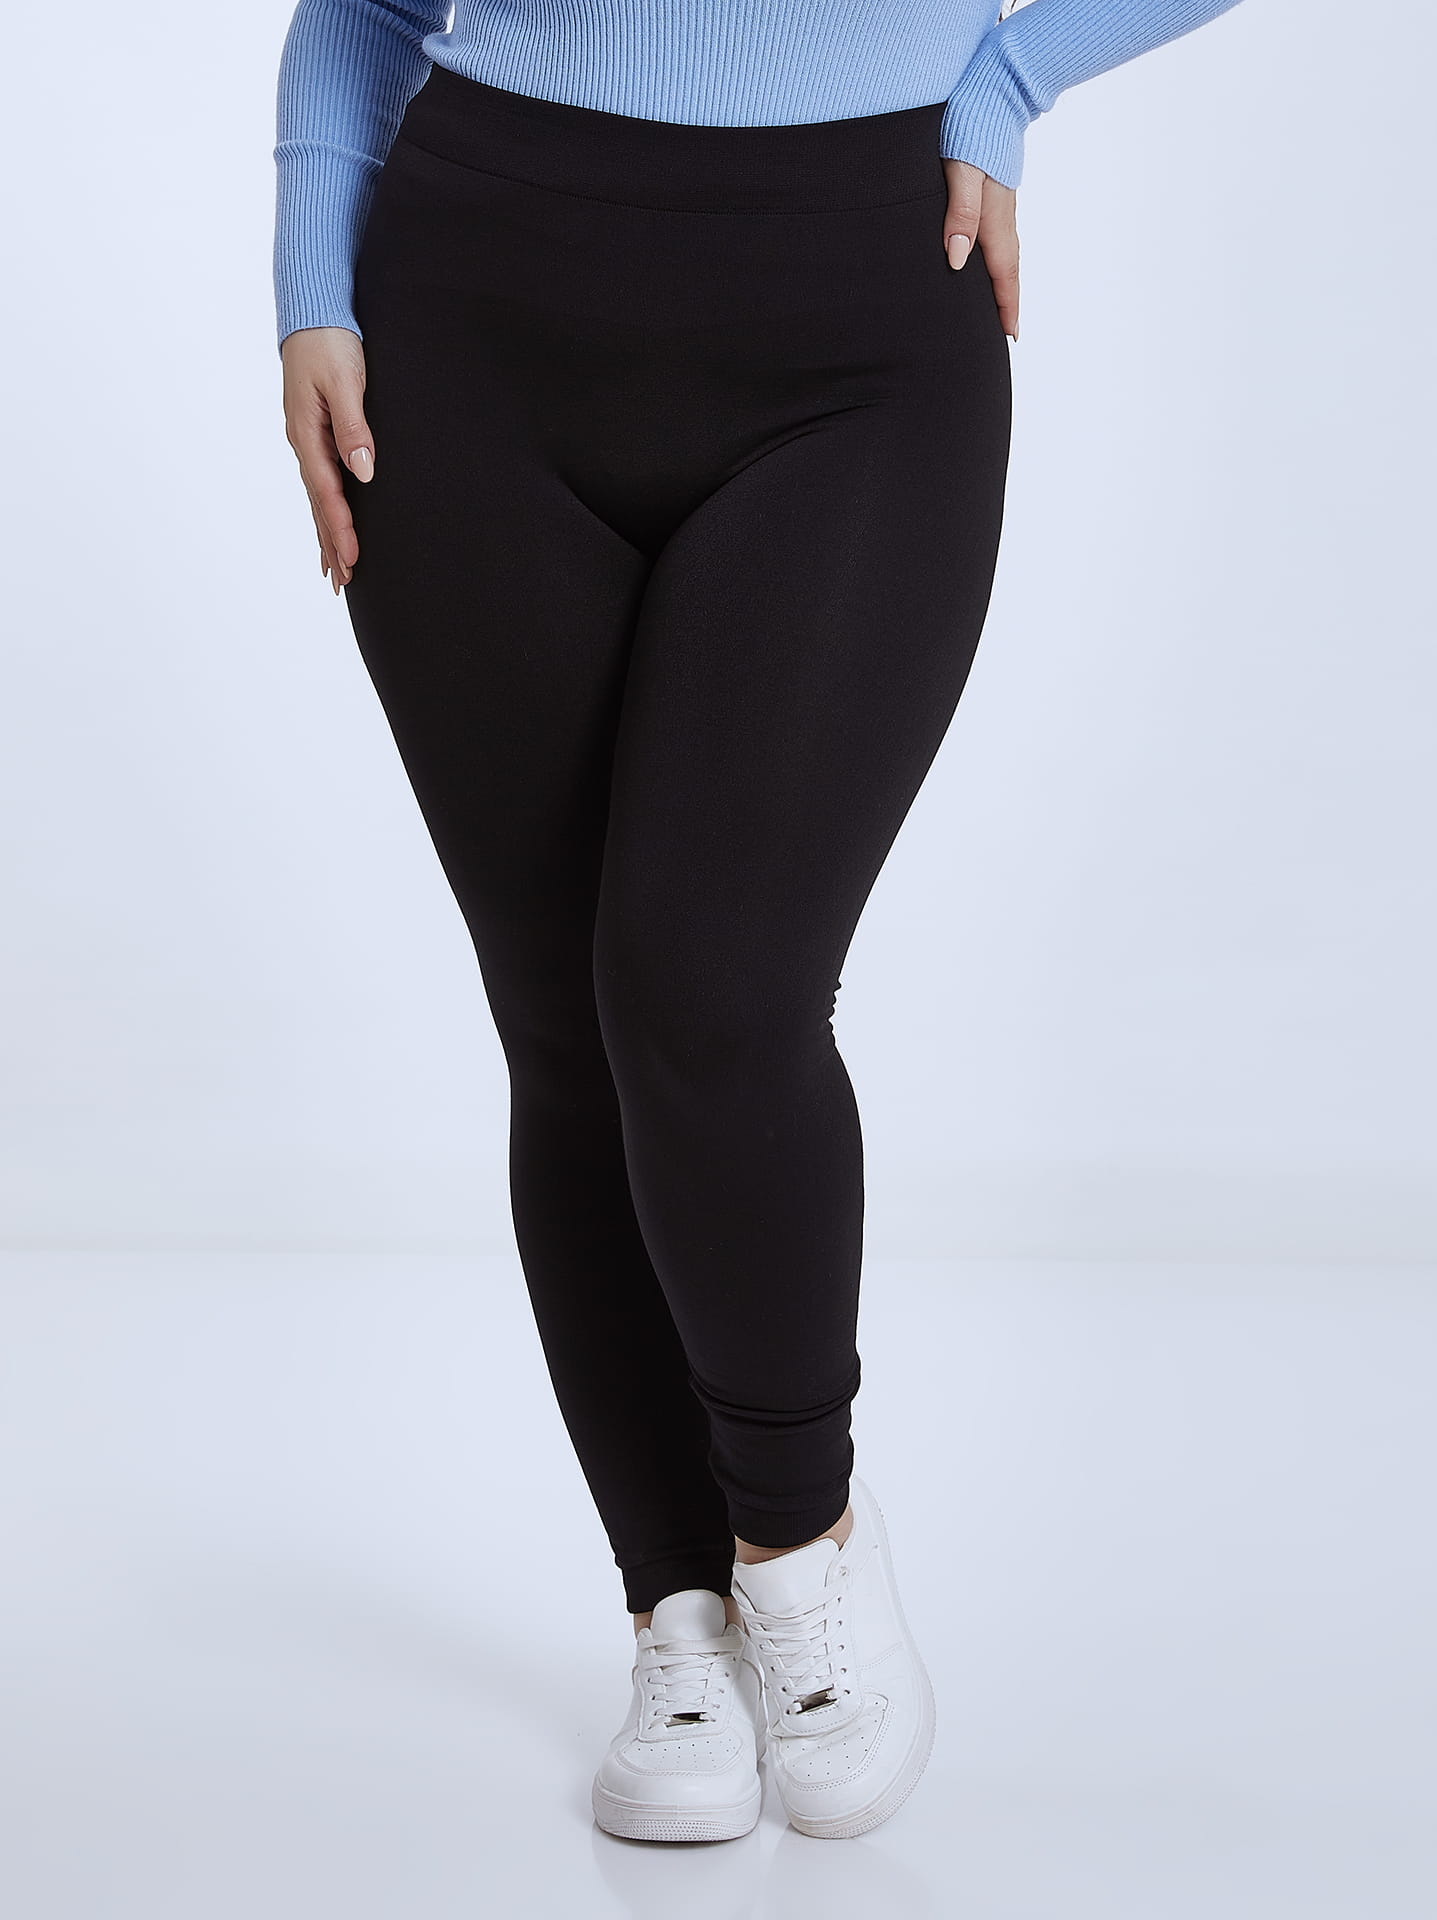 Plus size thermal leggings curvy in black, 4.99€ | Celestino